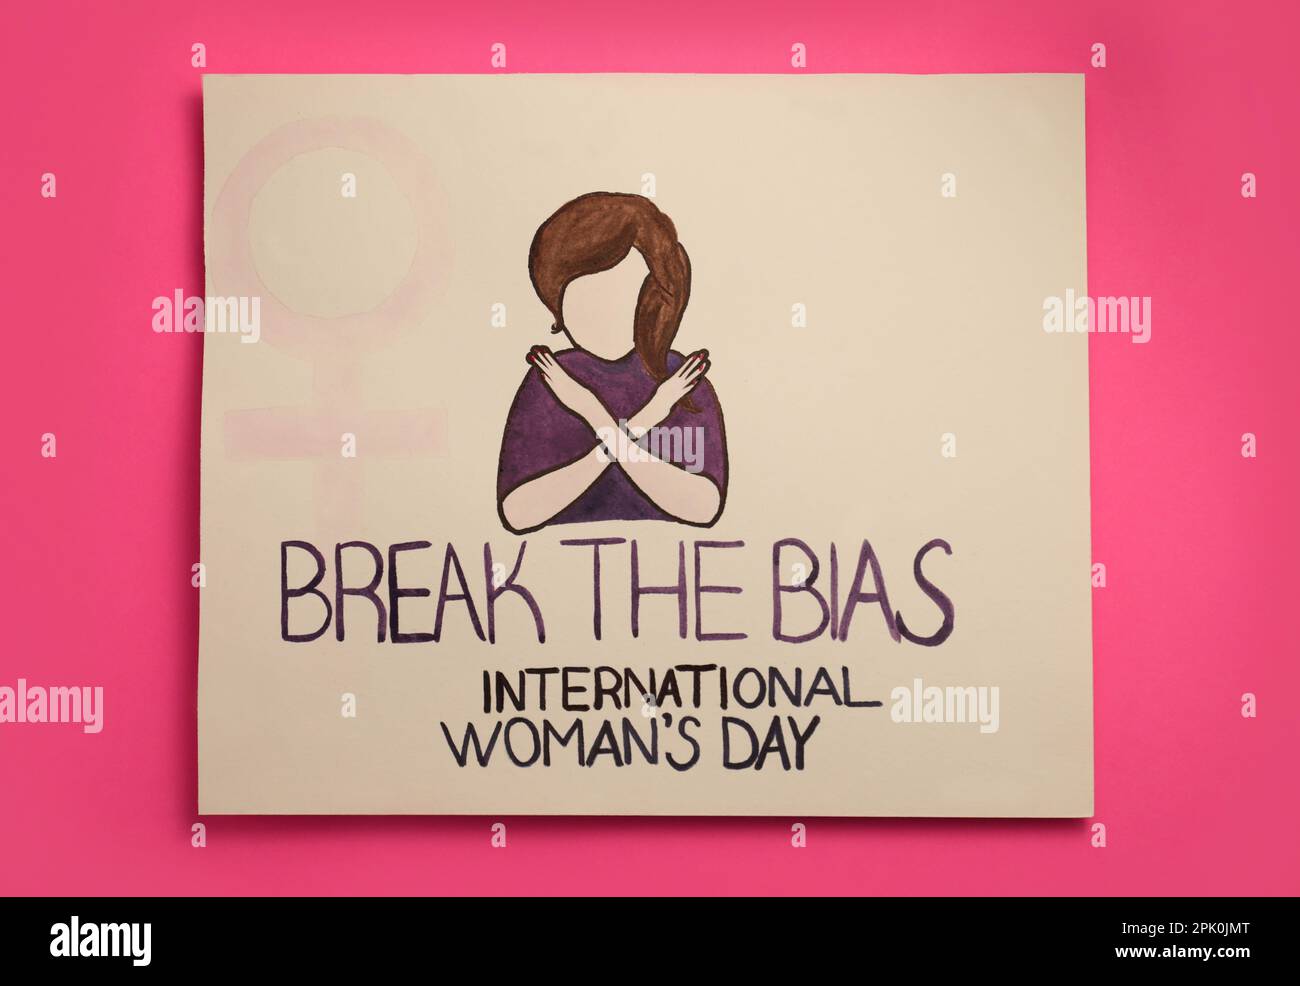 Karte mit Text Break the Bias, Internationaler Frauentag und Bild des Mädchens mit gekreuzten Armen auf pinkfarbenem Hintergrund, Draufsicht Stockfoto